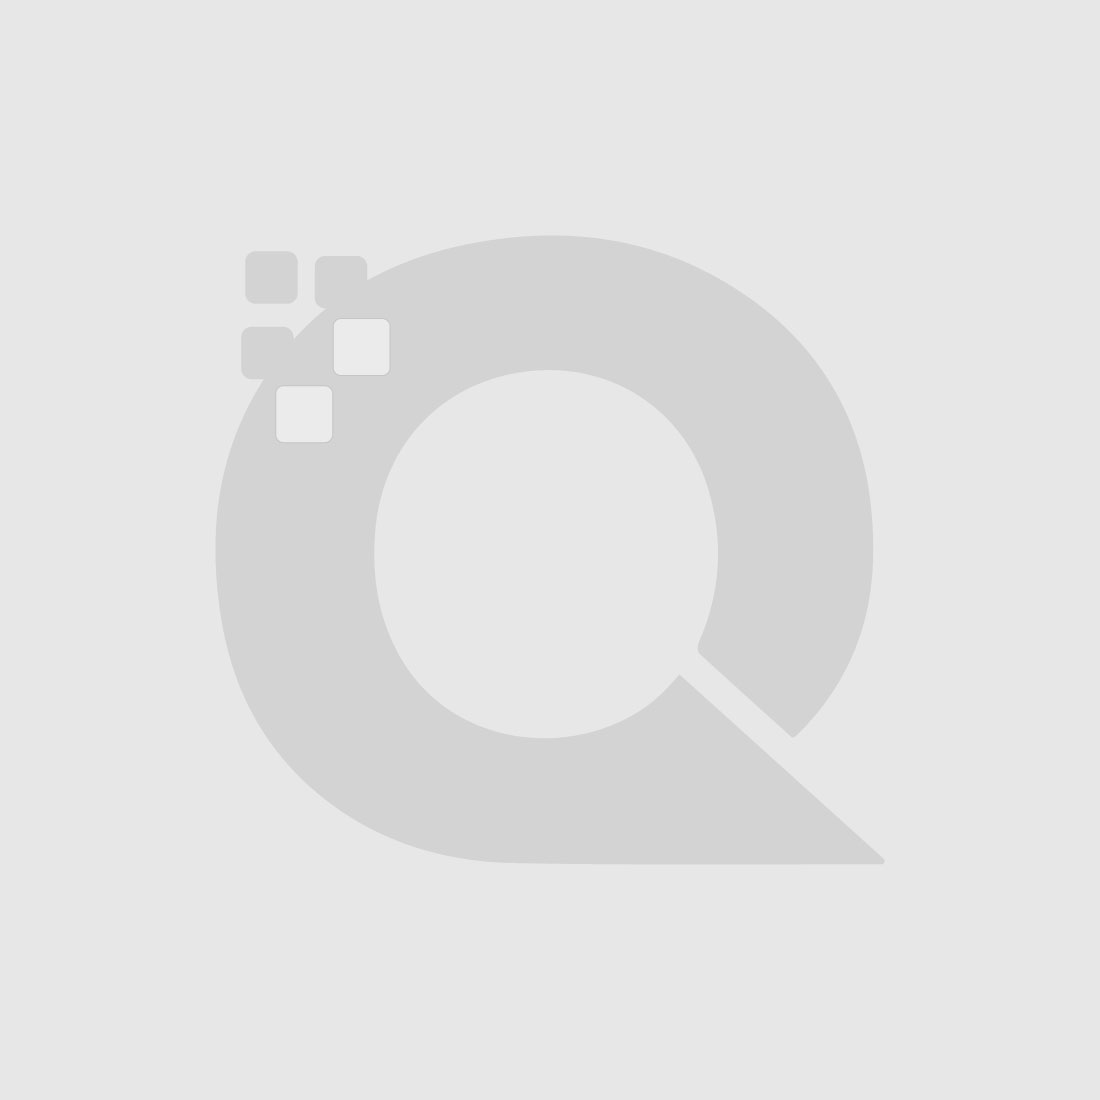 Guerniss Paris Velvet Matte Lipstick - GS018 - 3.5g